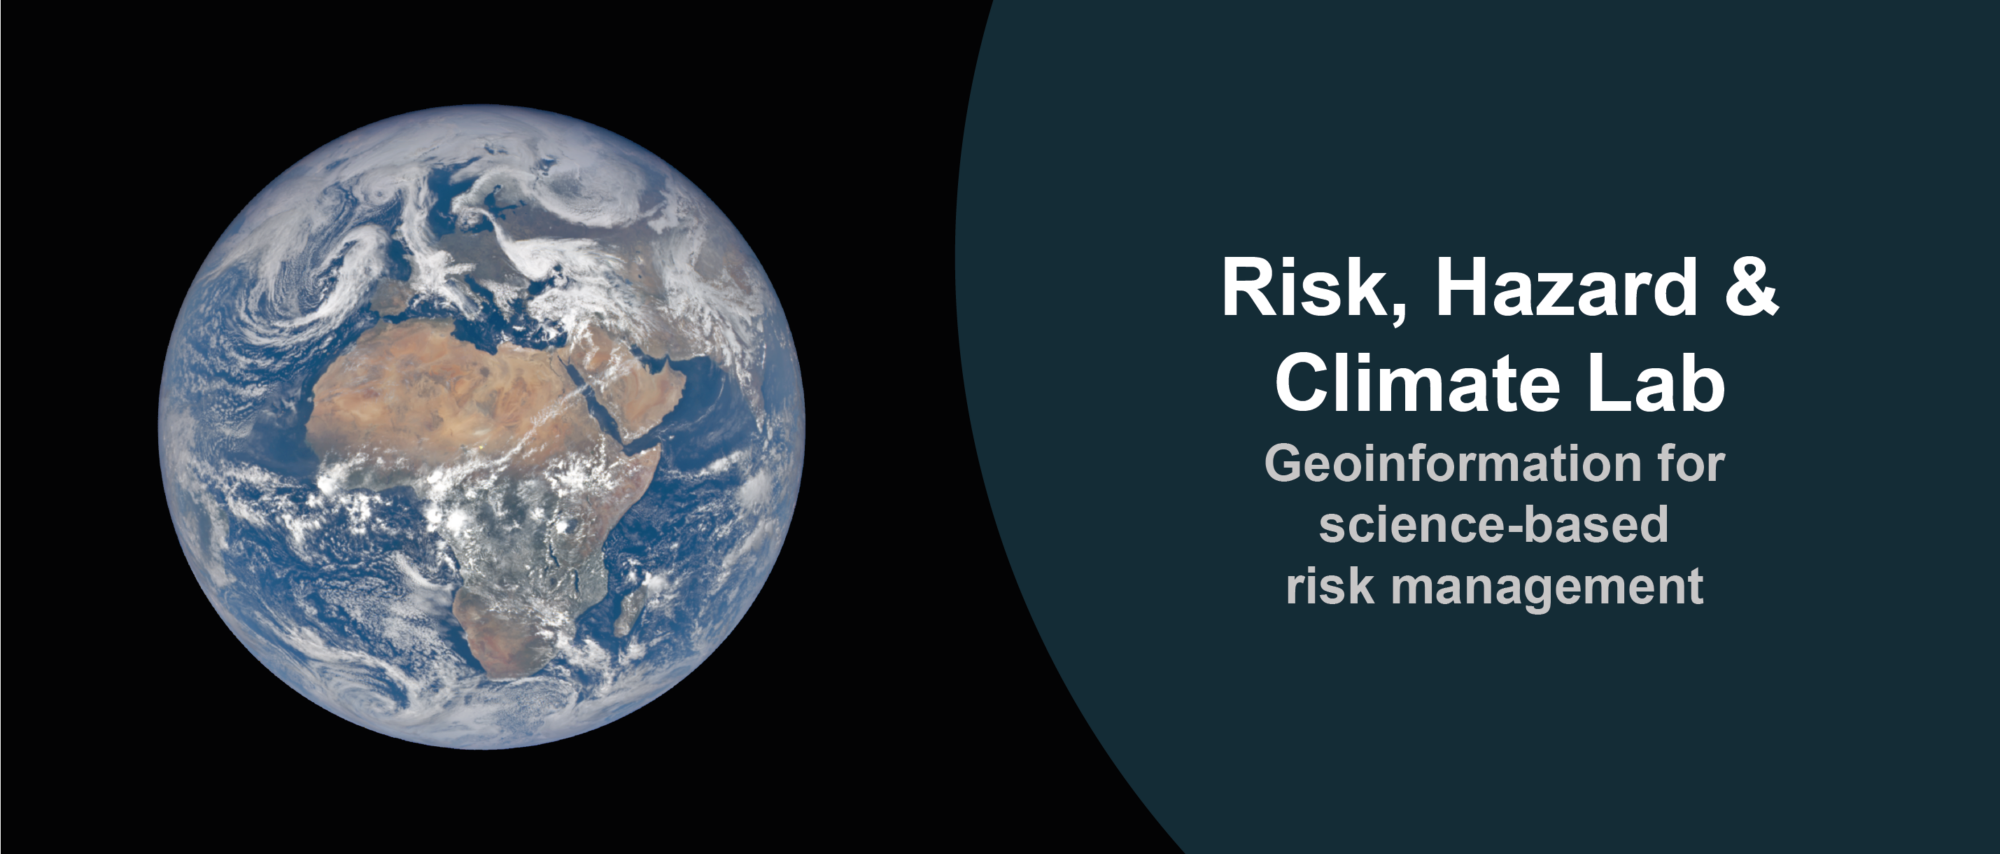 Risk, Hazard & Climate Lab